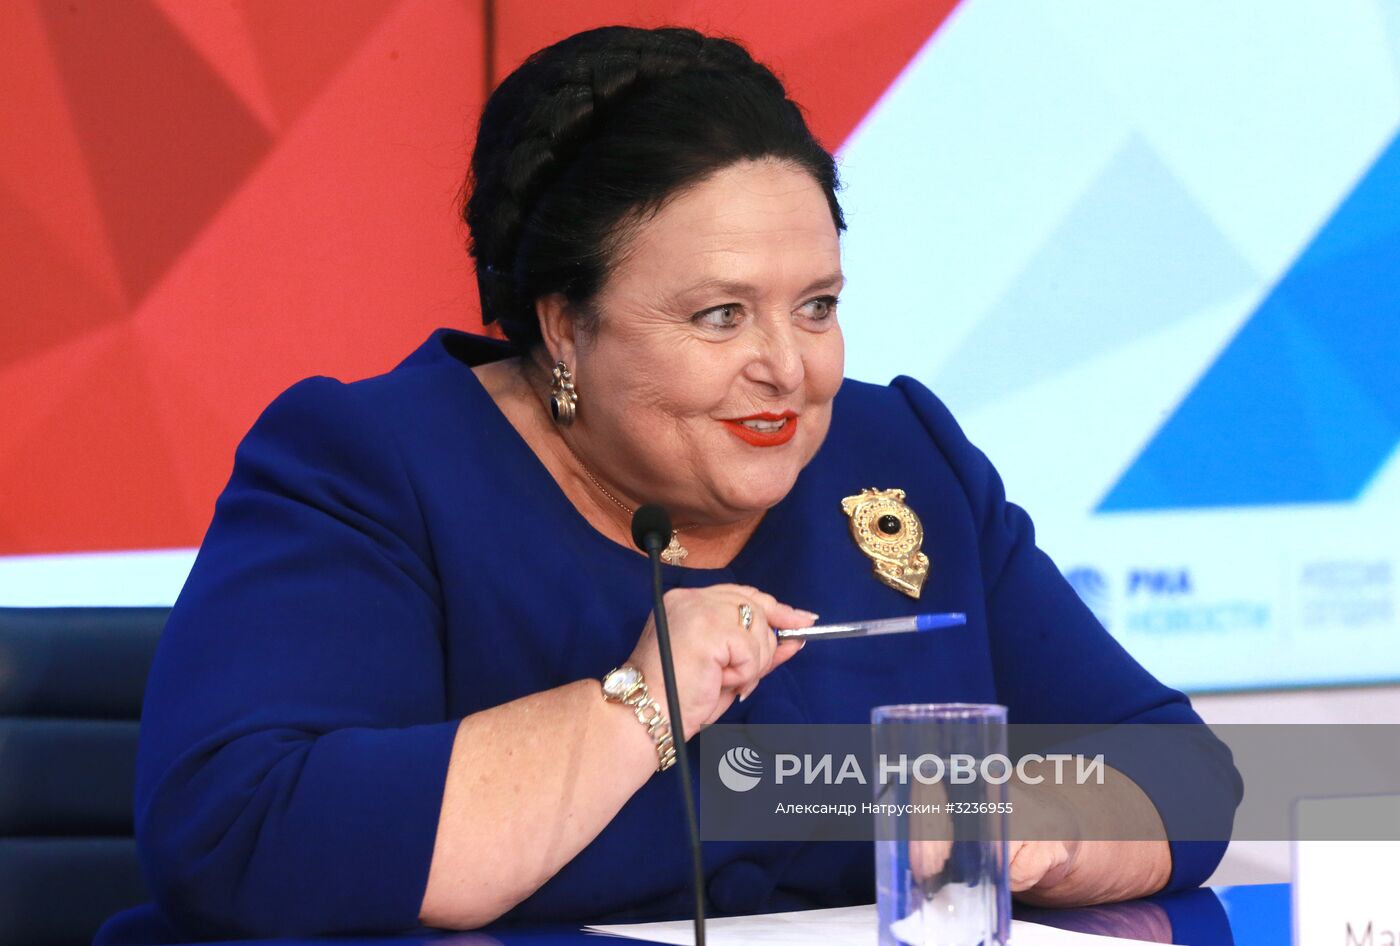 Пресс-конференция главы Российского императорского дома великой княгини Марии Владимировны